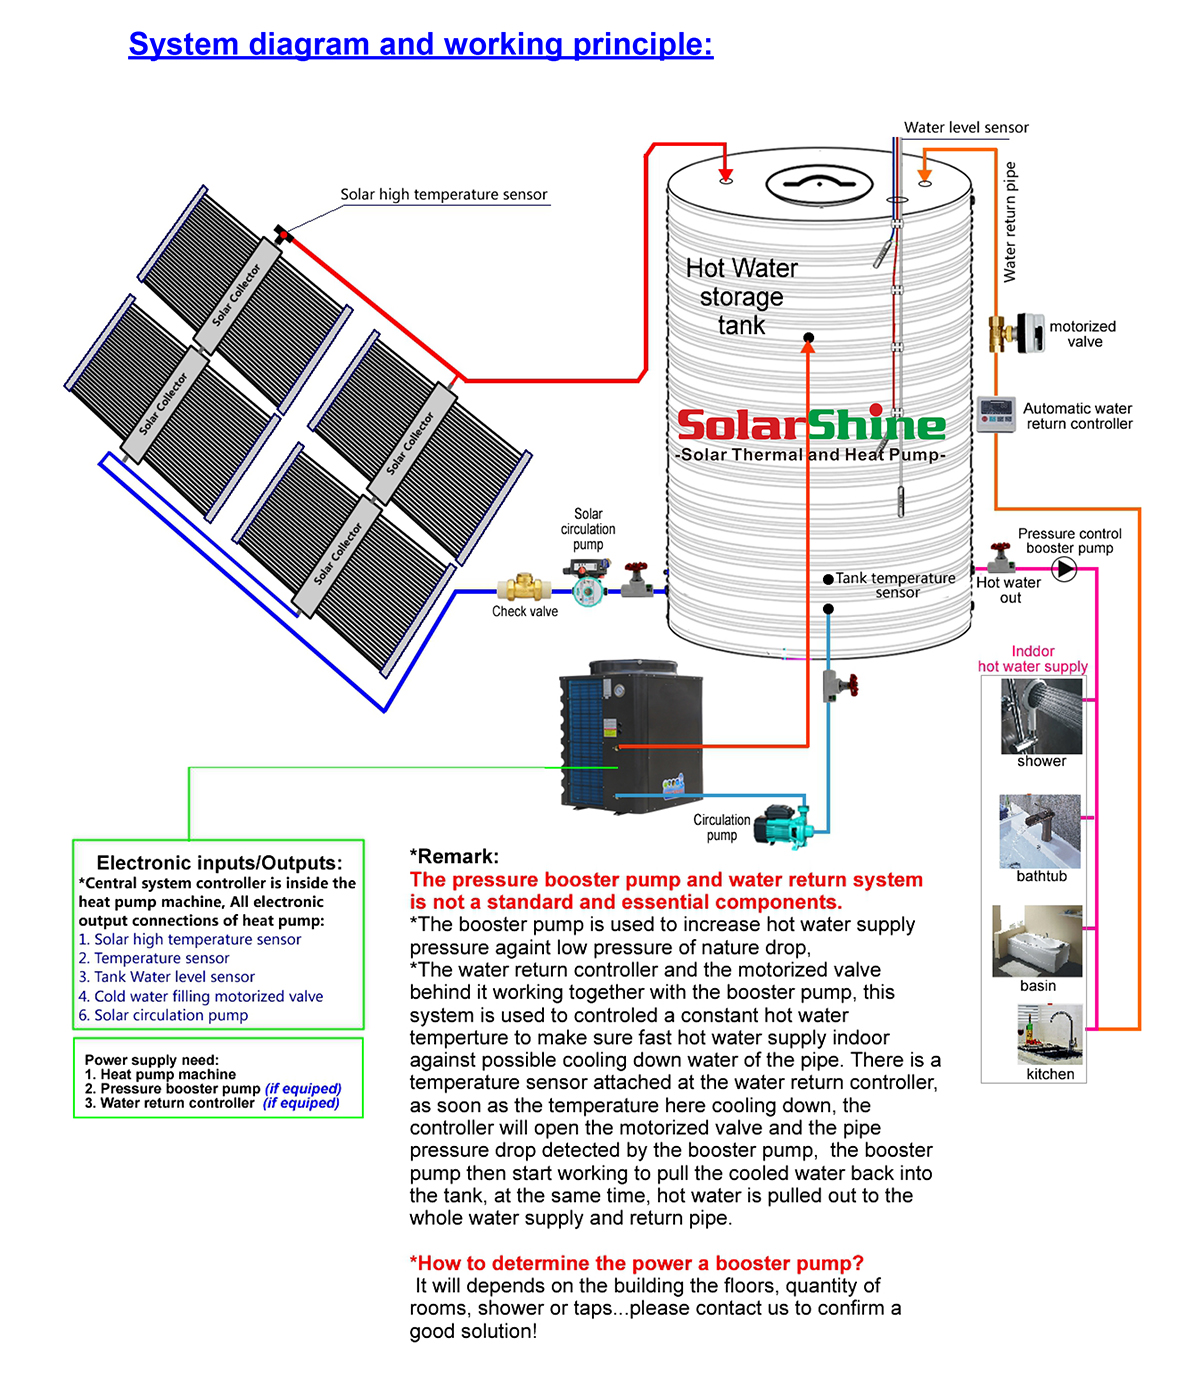 principio de funcionamiento del sistema de bomba de calor híbrido solar